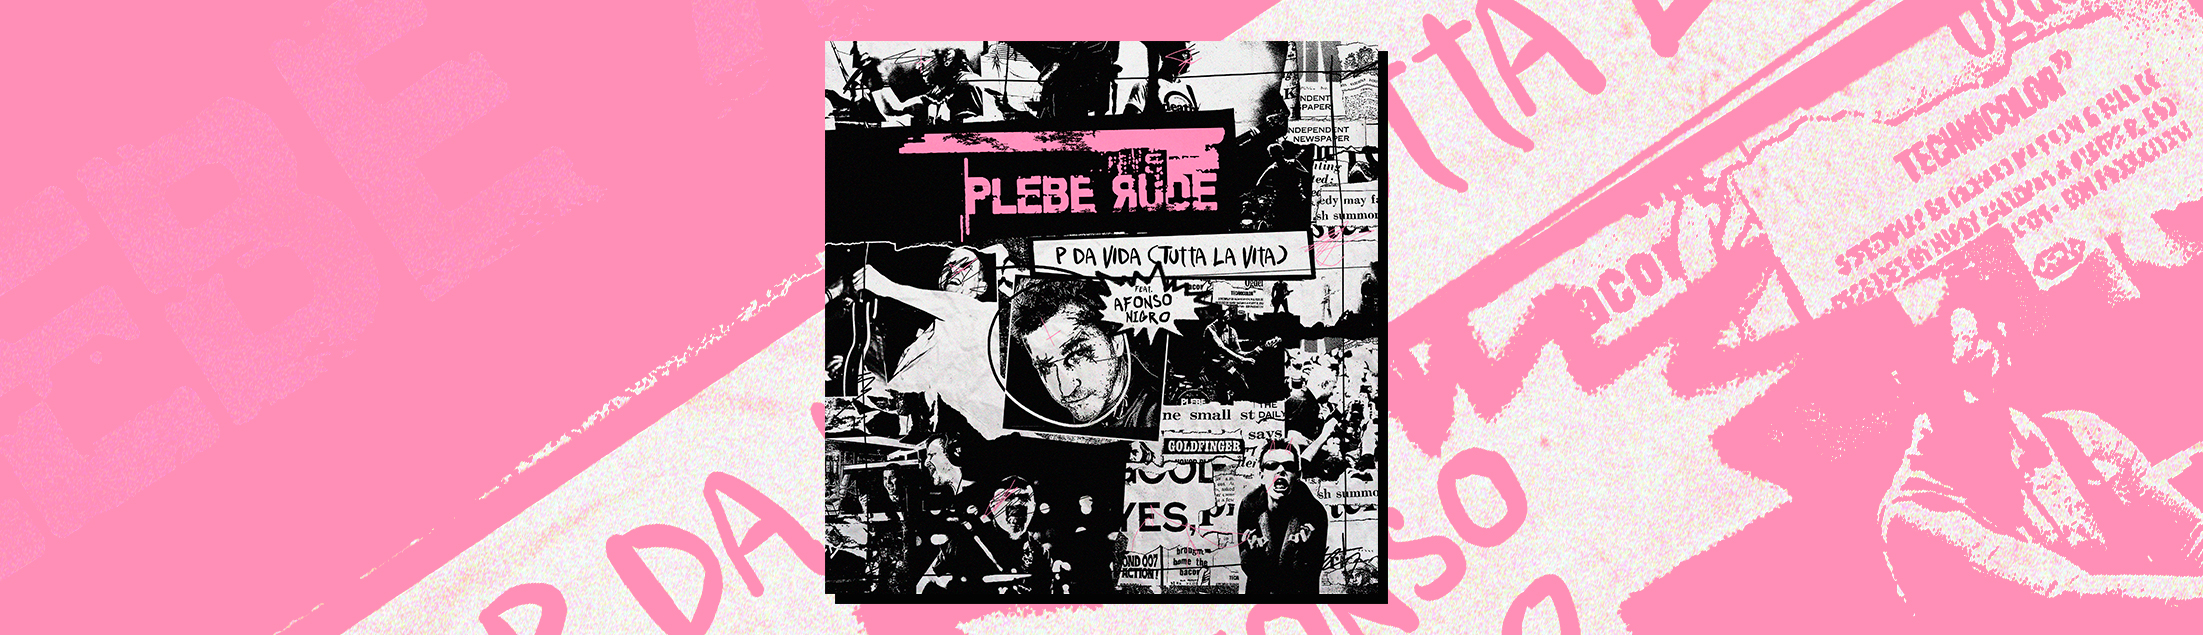 Plebe Rude grava 'P Da Vida' com participação de Afonso Nigro